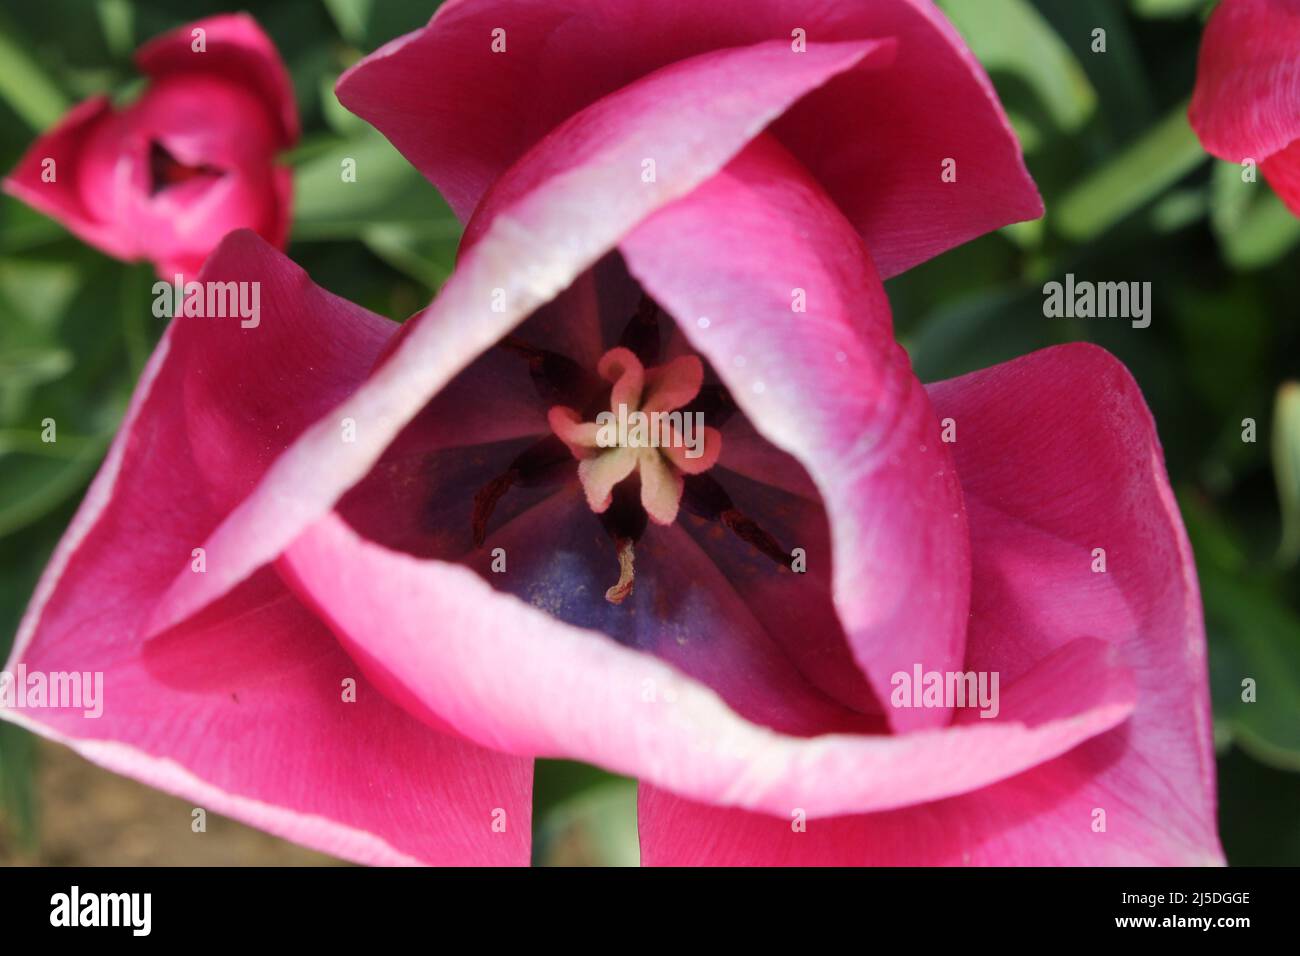 magnifiques tulipes en pleine fleur de printemps Banque D'Images